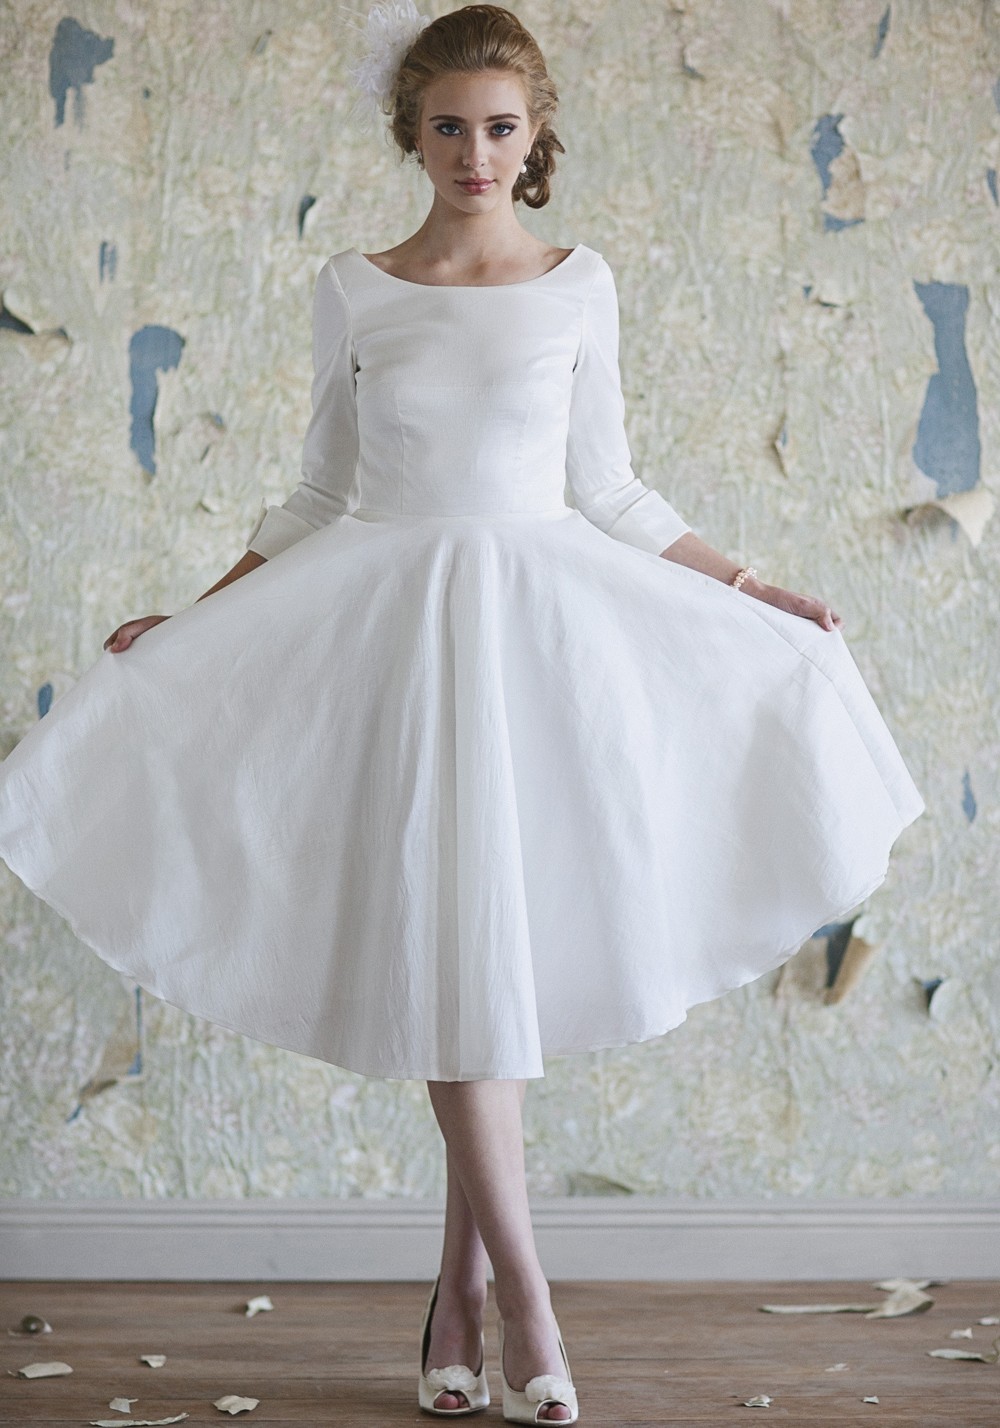 27 Inspiring Ideas of Tea Length Wedding Dresses | The ...